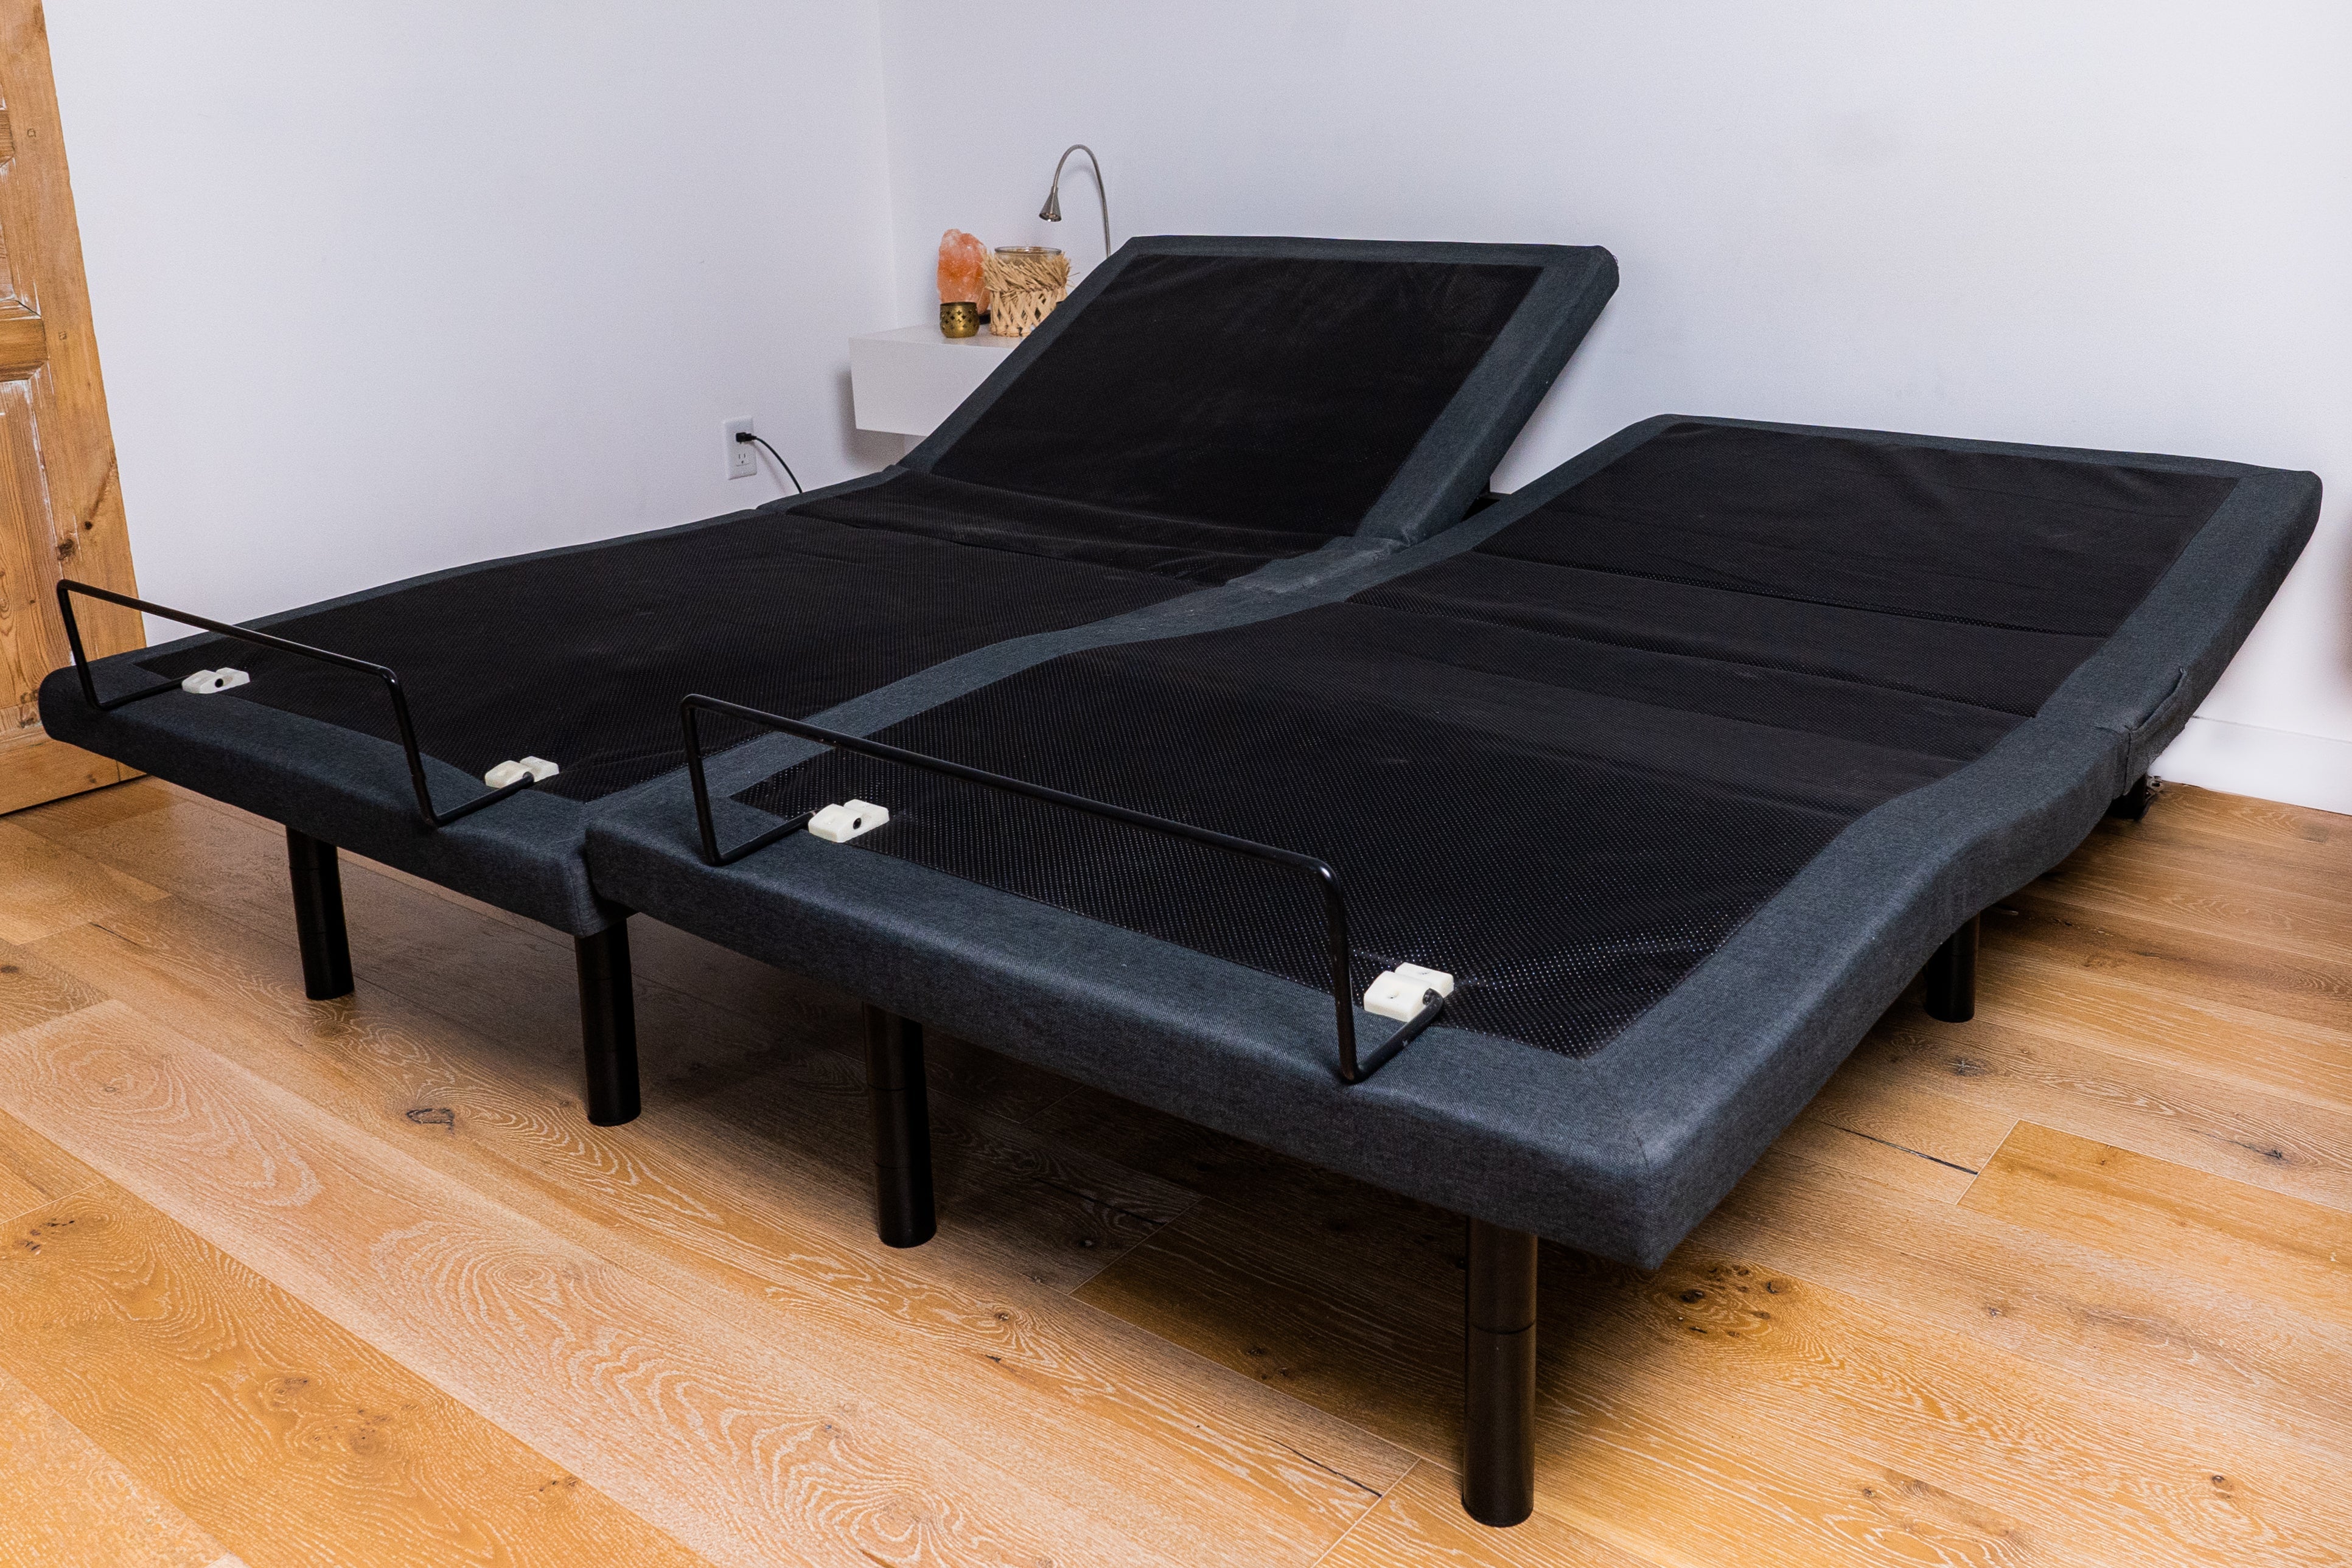 Demo Ensley Split Queen Adjustable Bed Package